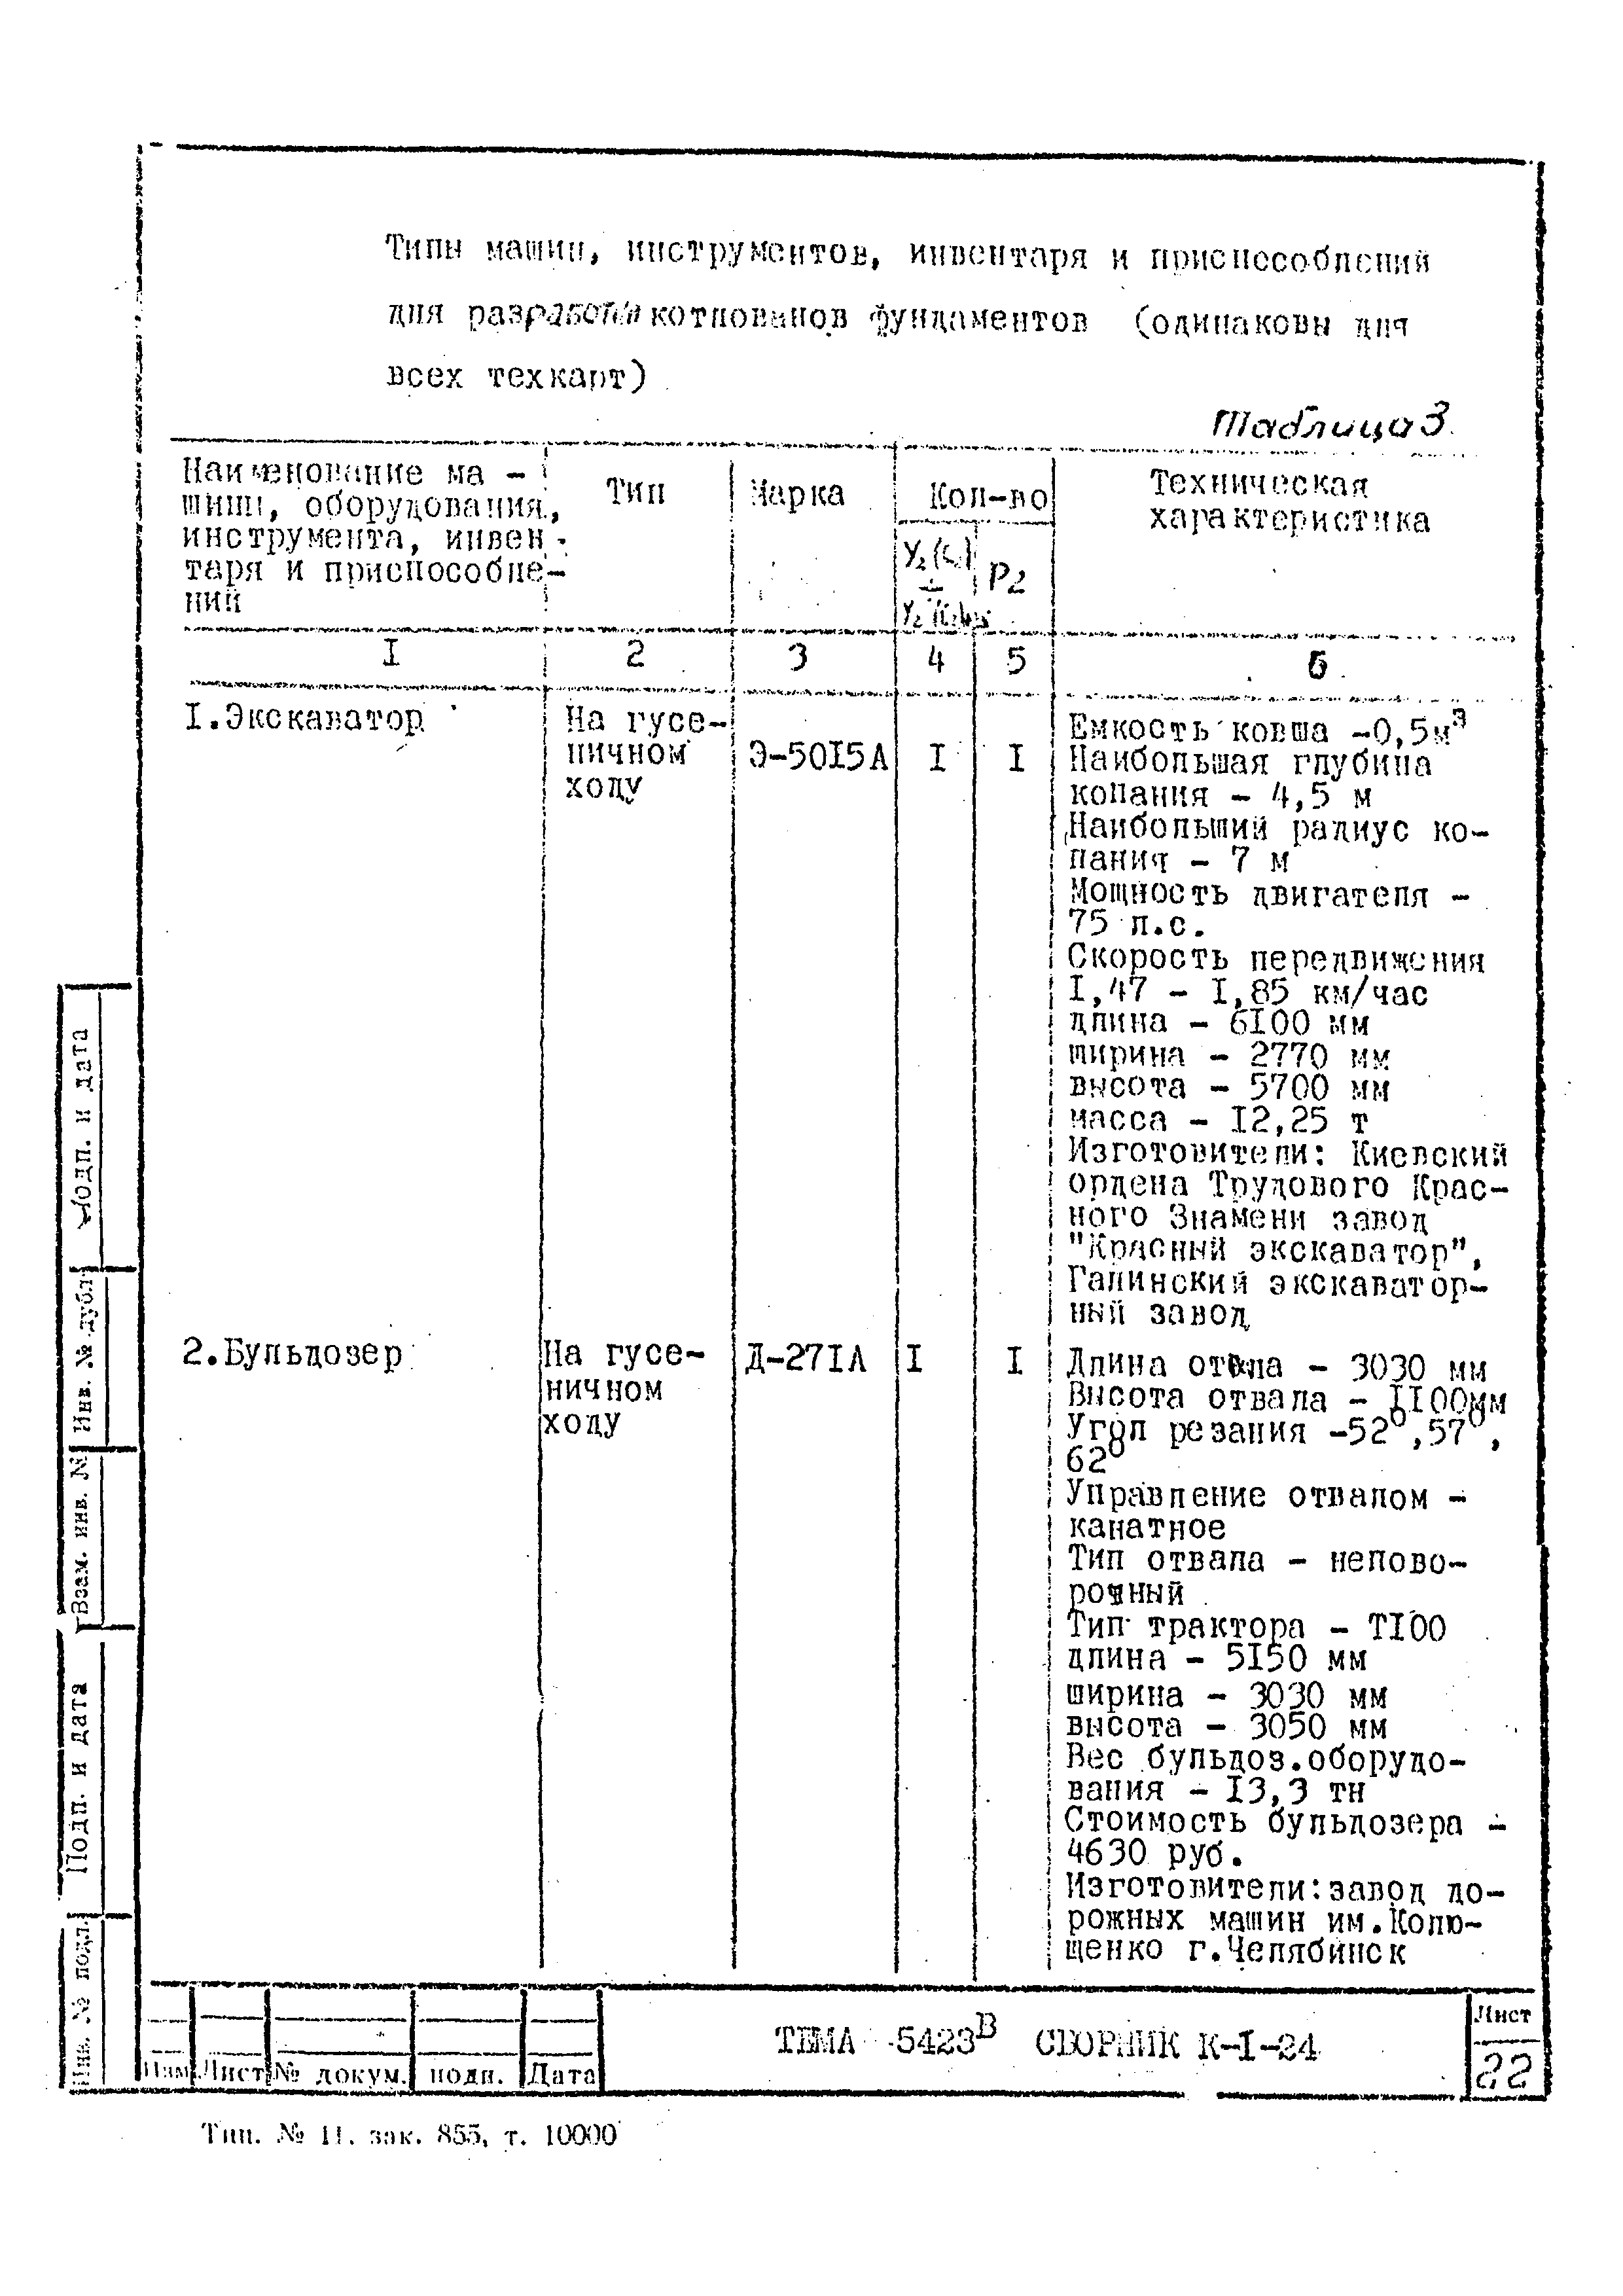 Технологическая карта К-1-24-8